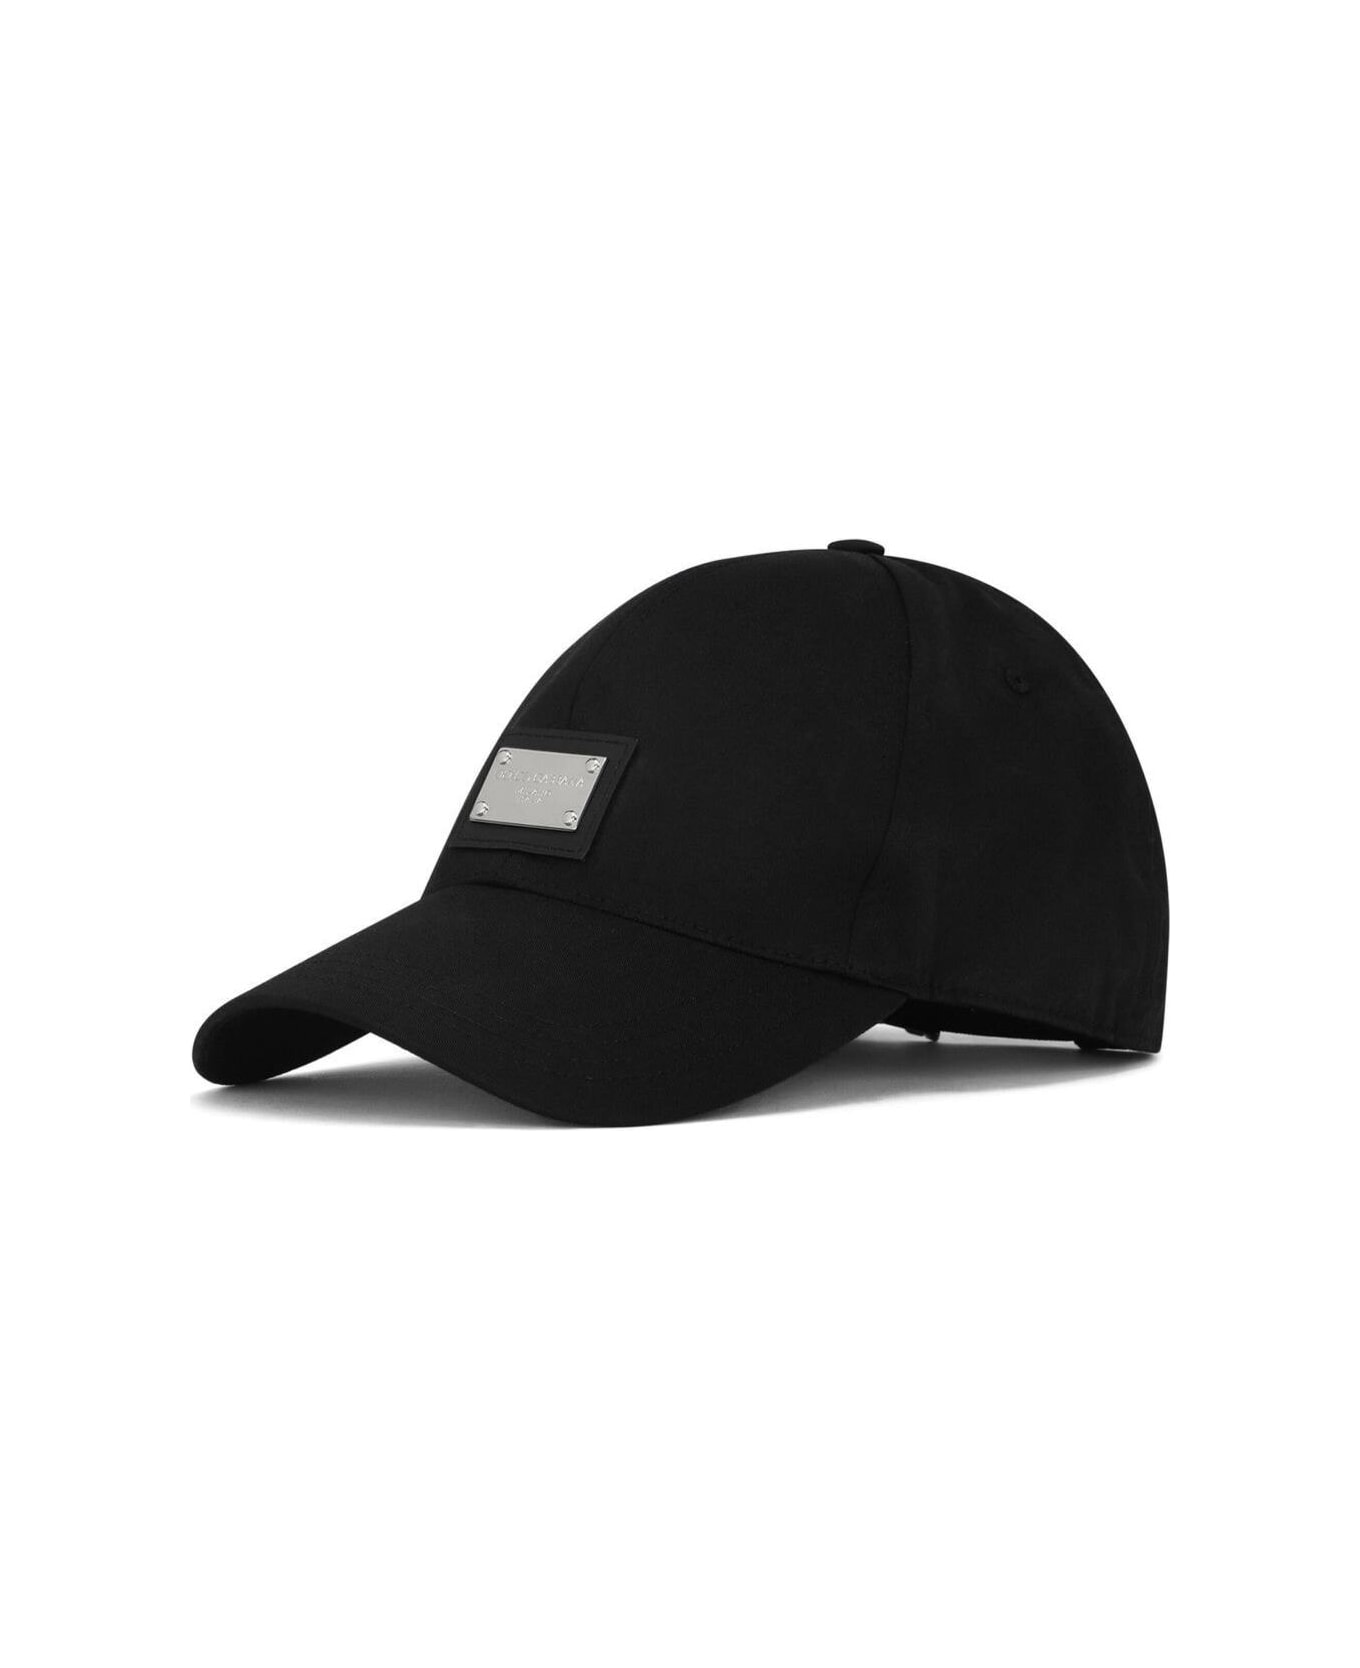 Dolce blazer & Gabbana Black Baseball Cap With Logo Placque In Cotton Man - Black